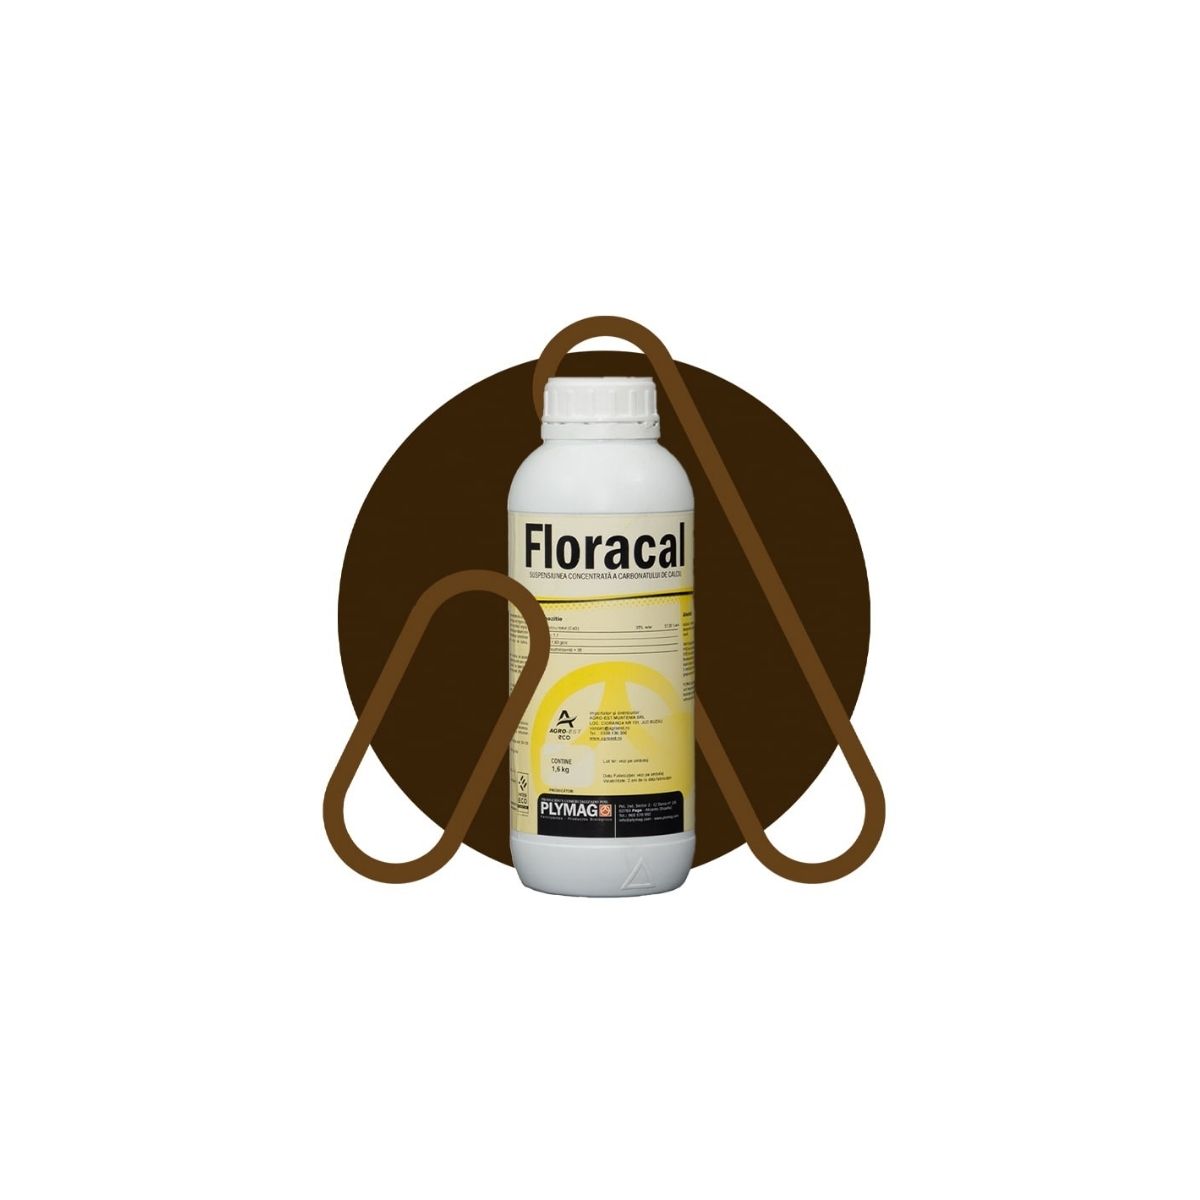 Corectori aciditate - Corector pentru soluri acide si saline Floracal, 1 L, hectarul.ro